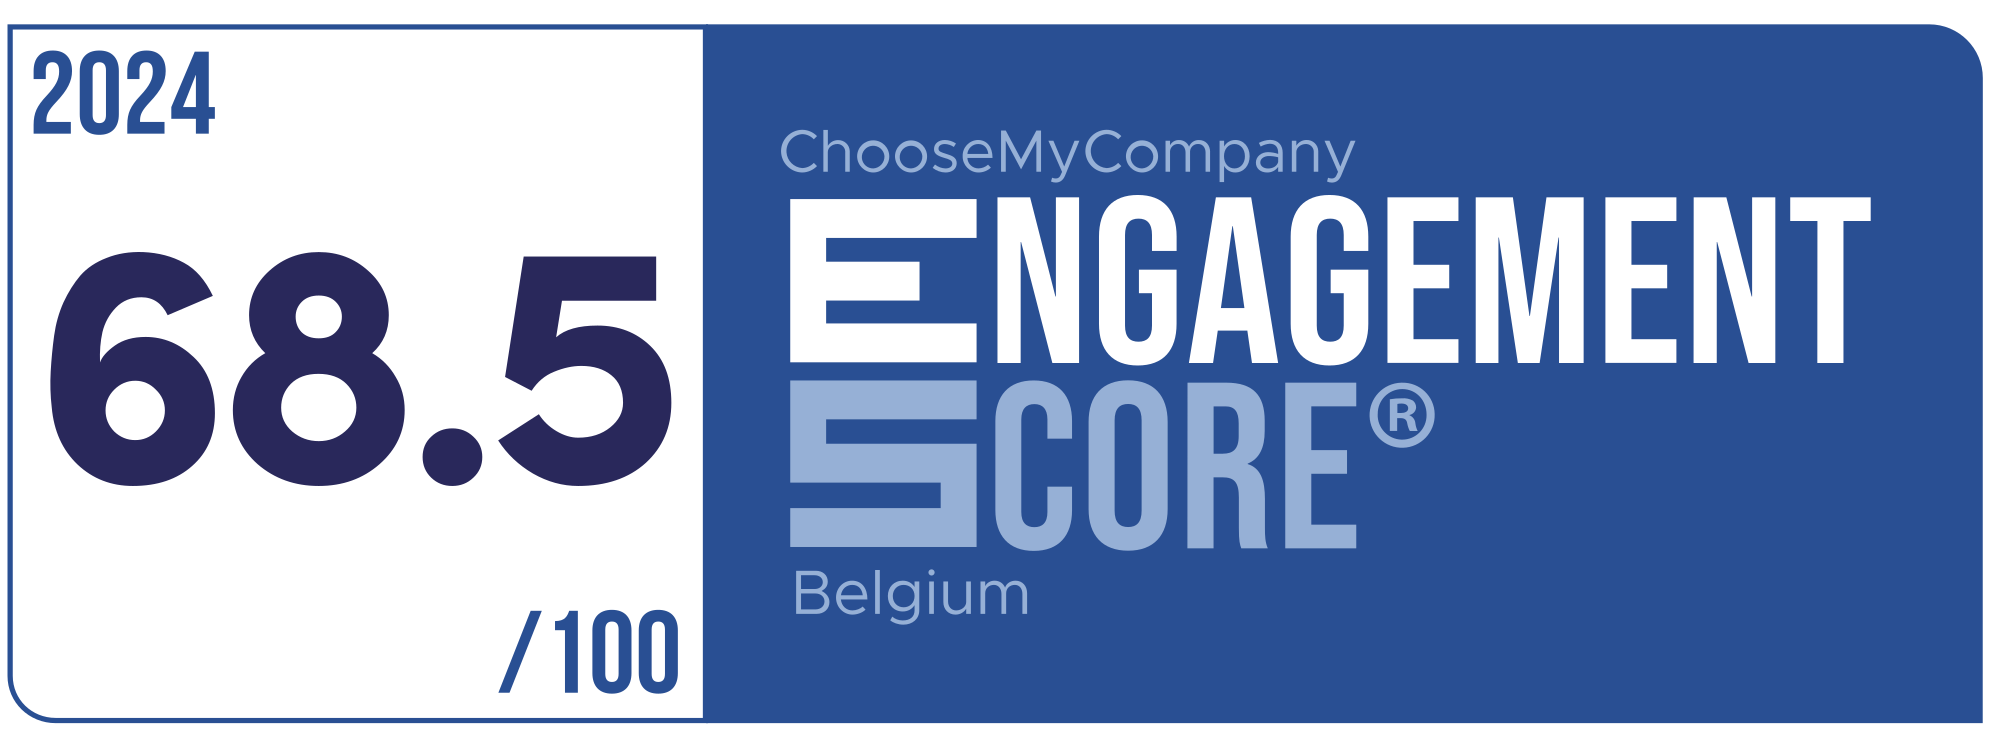 Label Engagement Score 2024 Belgium